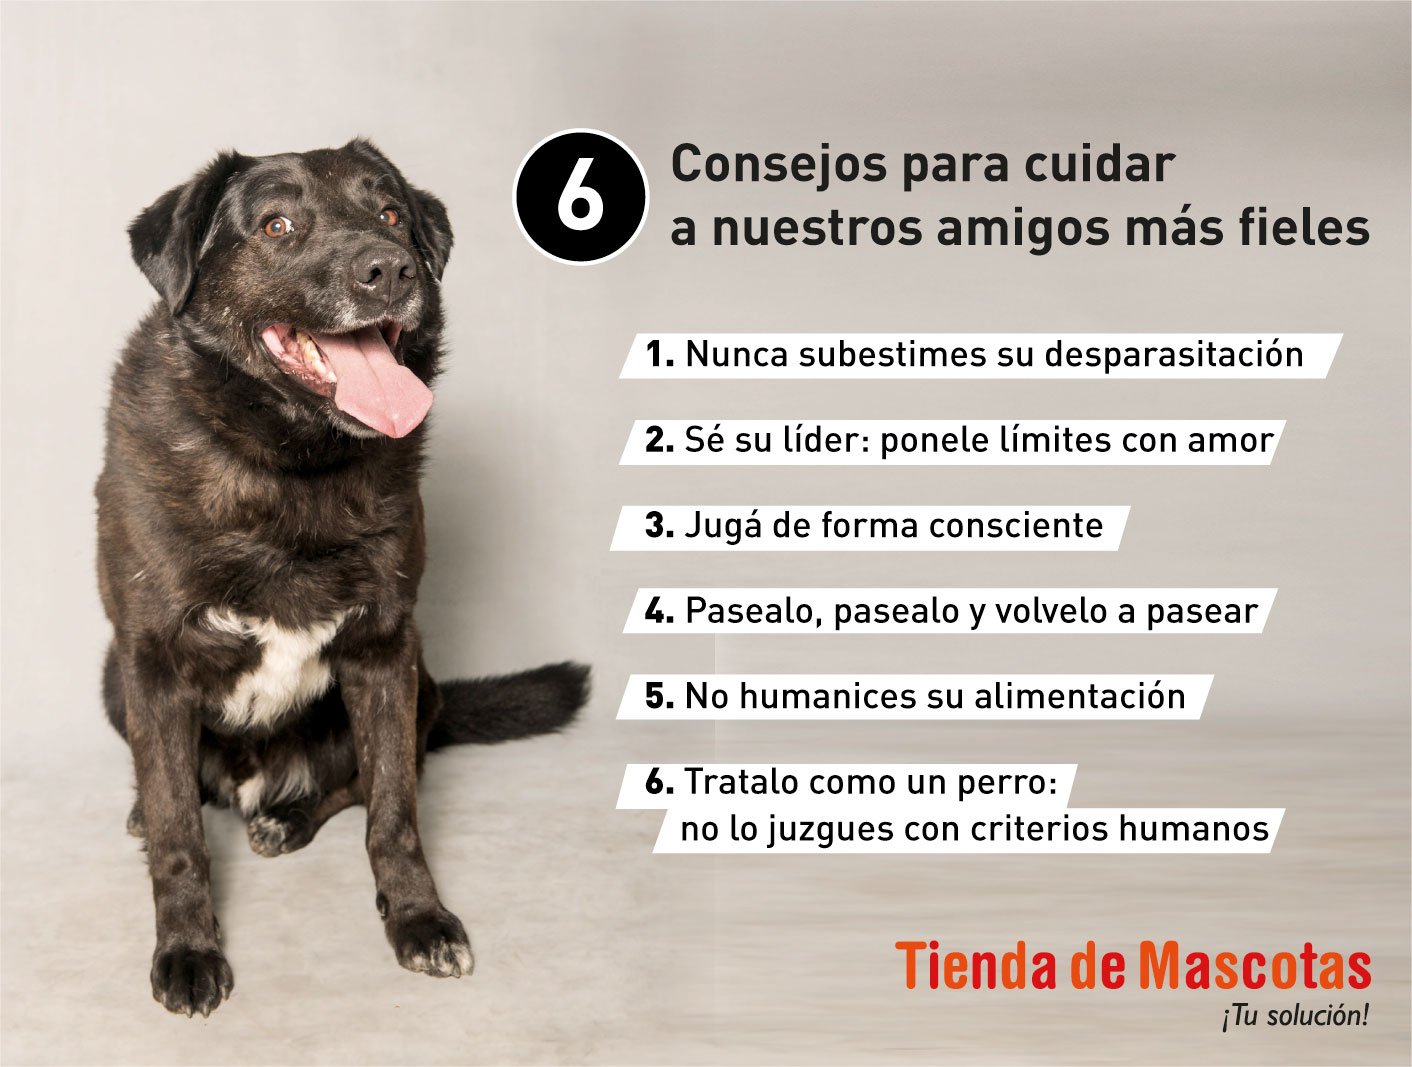 Fiesta Animal 6 consejos para cuidar a nuestros amigos - Tienda de Mascotas | Todo para Mascota